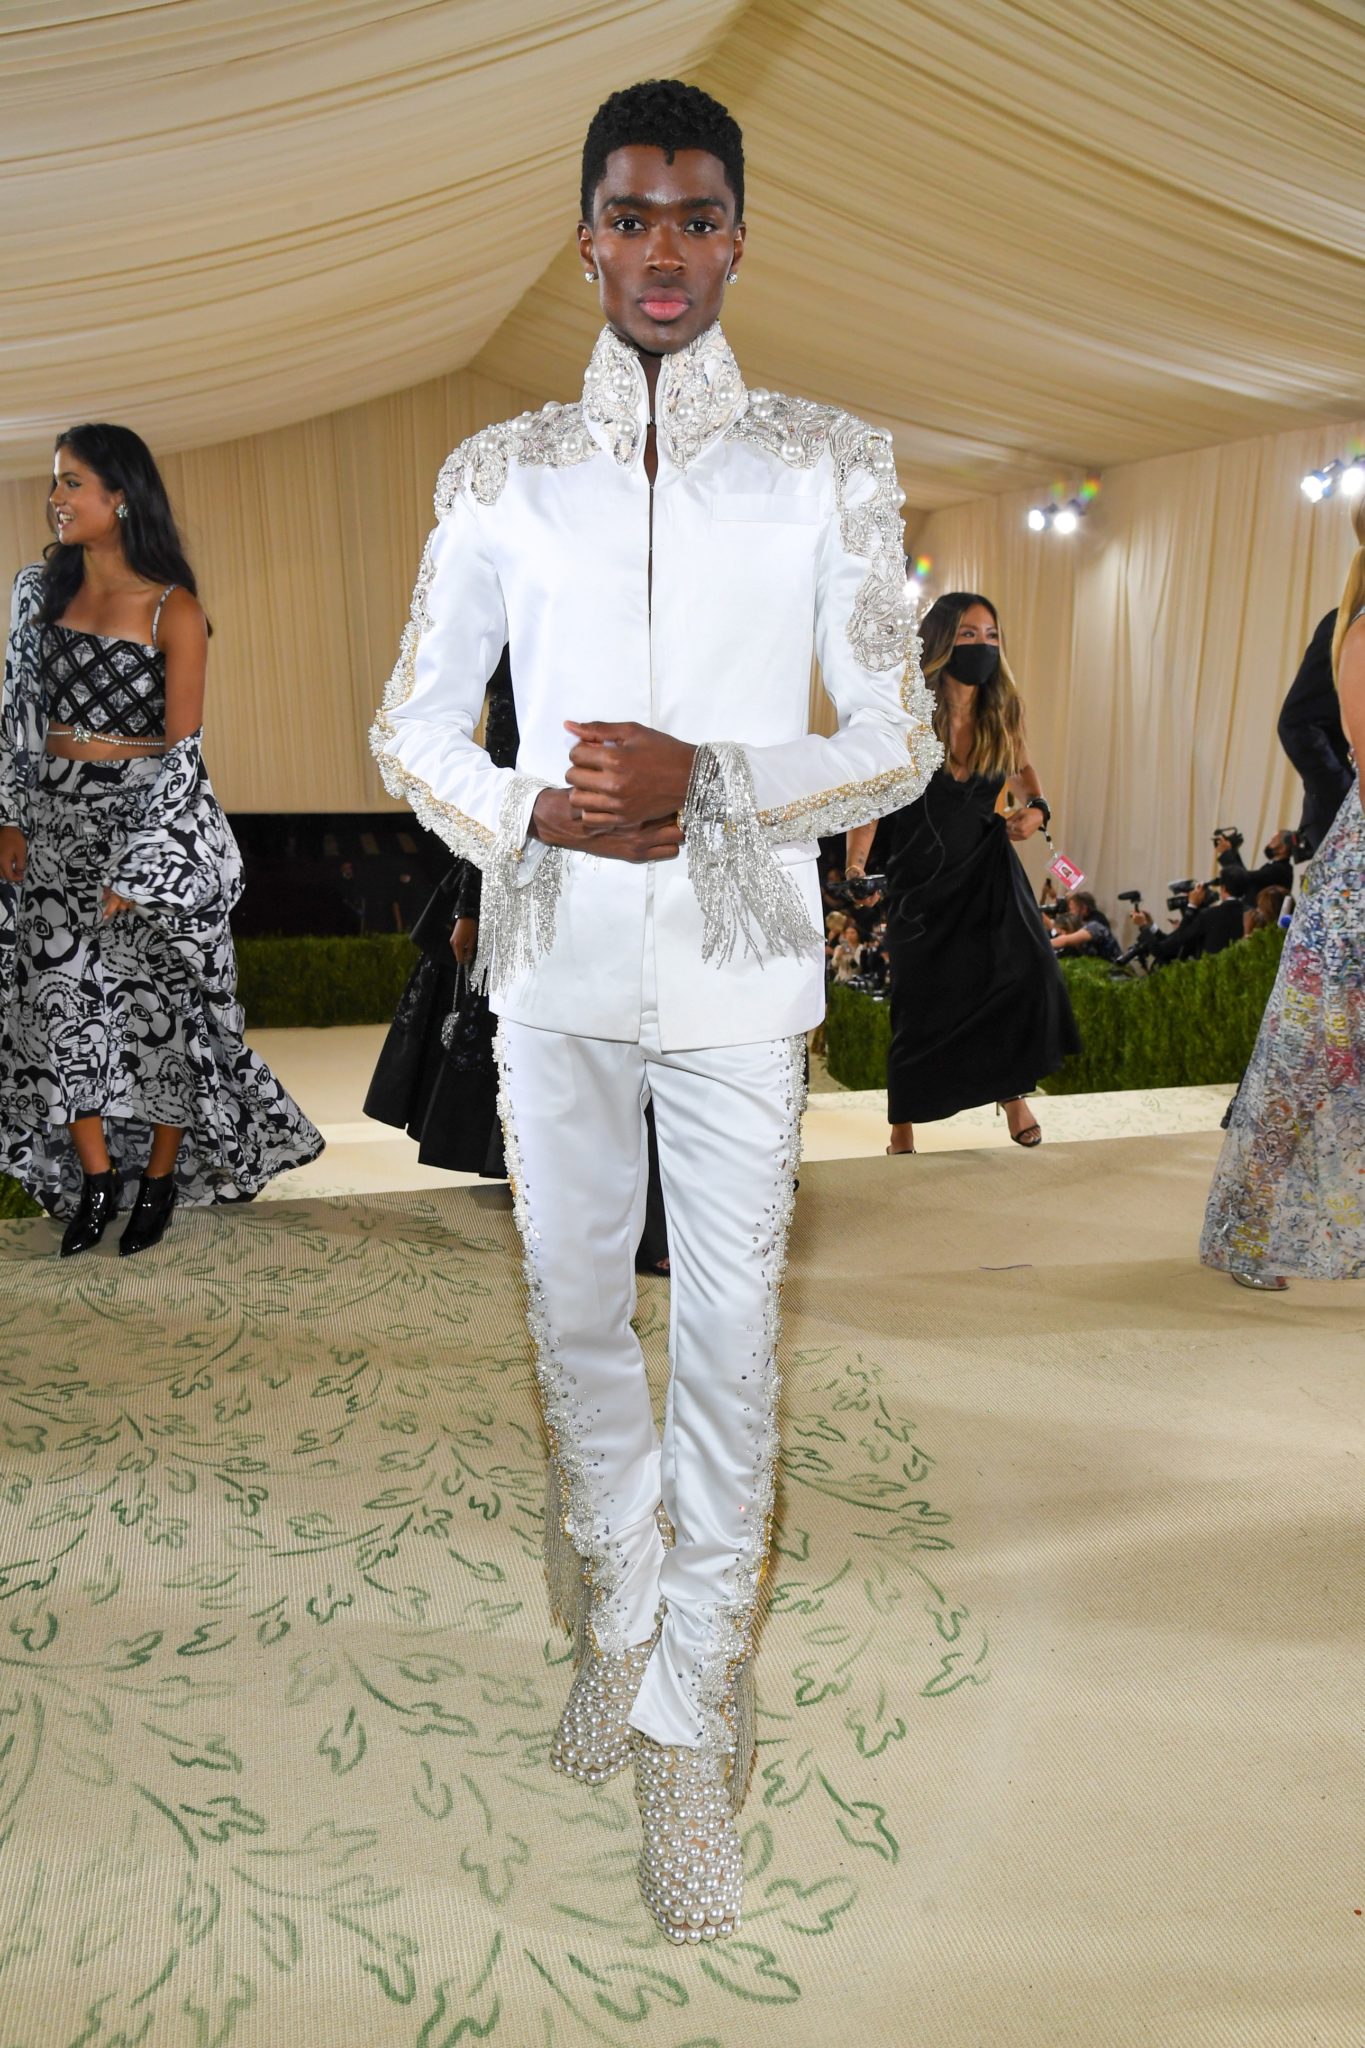 Nam người mẫu Alton Mason thể hiện khí chất vương giả, sang trọng với thiết kế suit trắng của Theophilo. Nổi bật nhất là hàng ngọc trai được đính kết hai bên cầu vai và đôi giày bằng ngọc trai độc đáo.